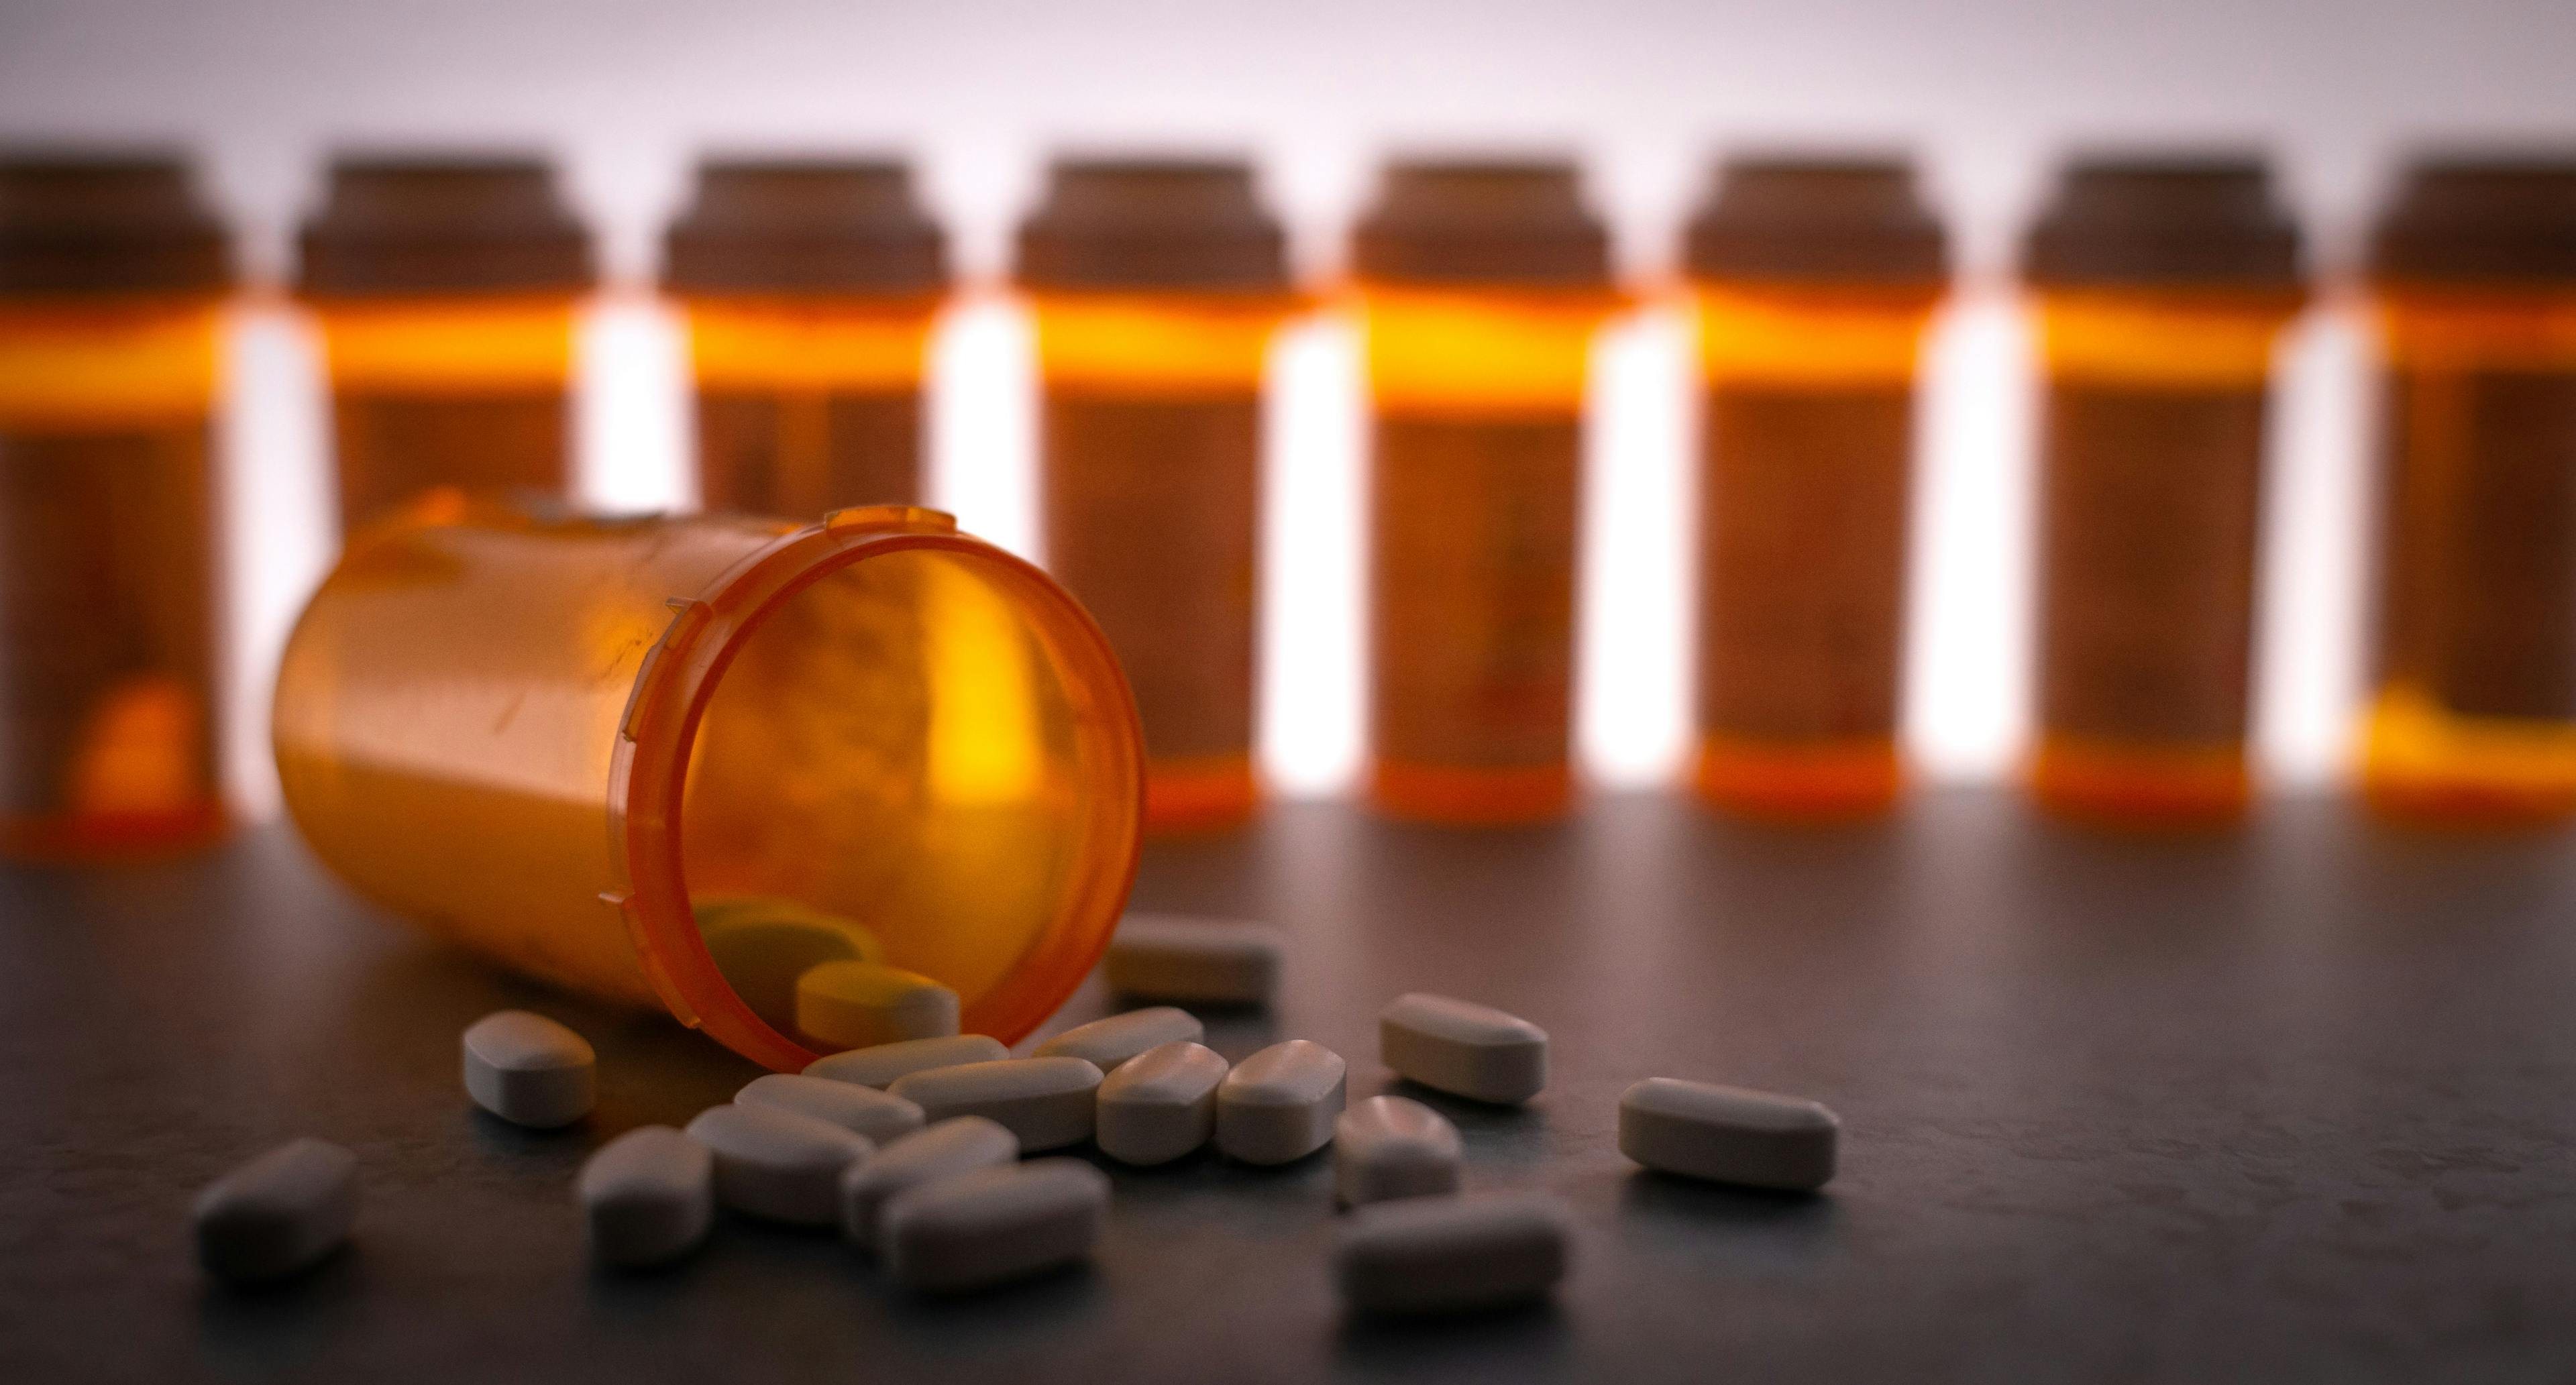 CDC updates opioid prescribing guidelines